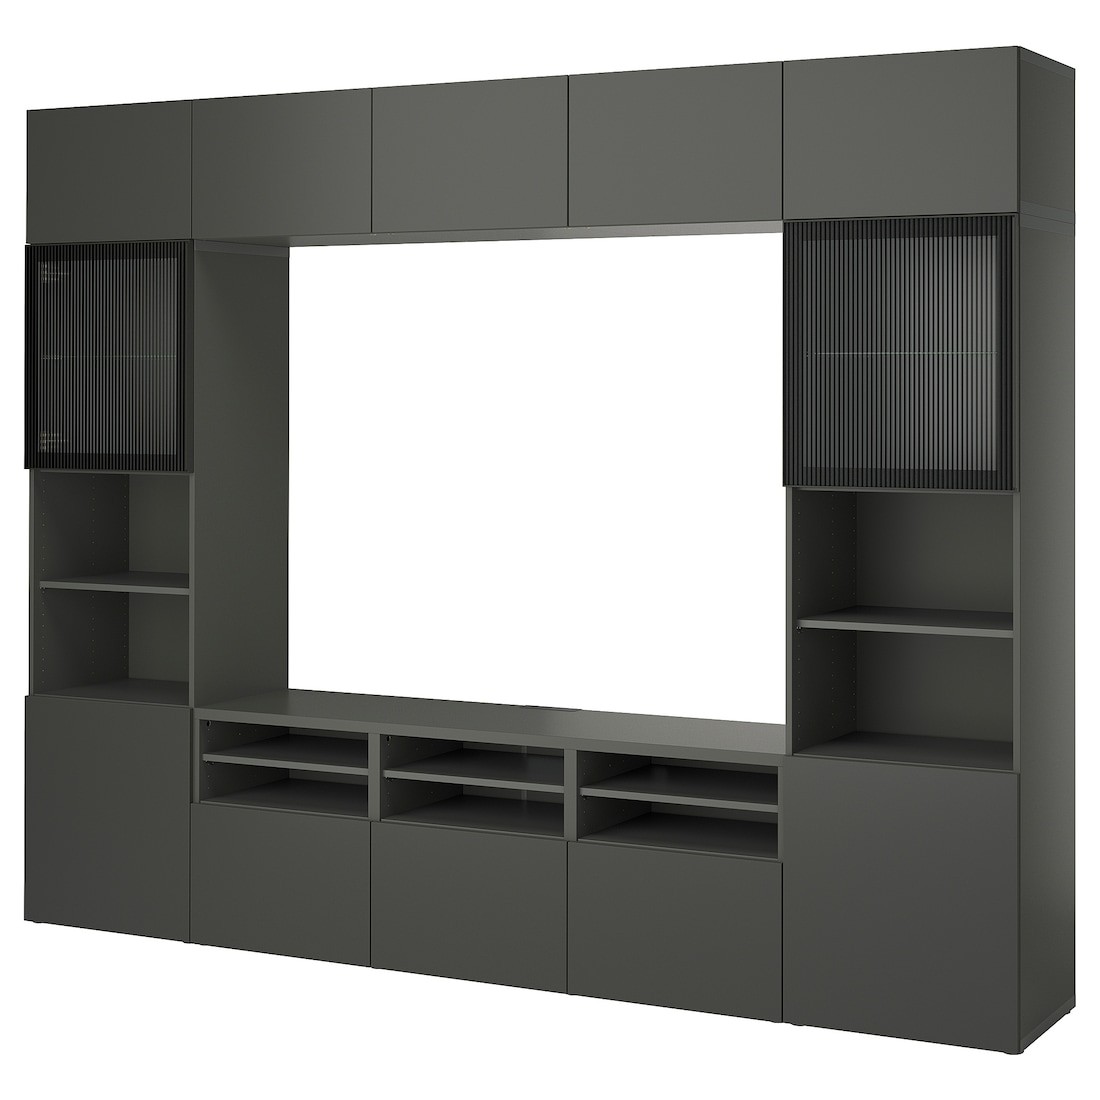 BESTÅ Комбинация для ТВ / стеклянные двери, темно-серый Lappviken / Fällsvik антрацит, 300x42x231 см